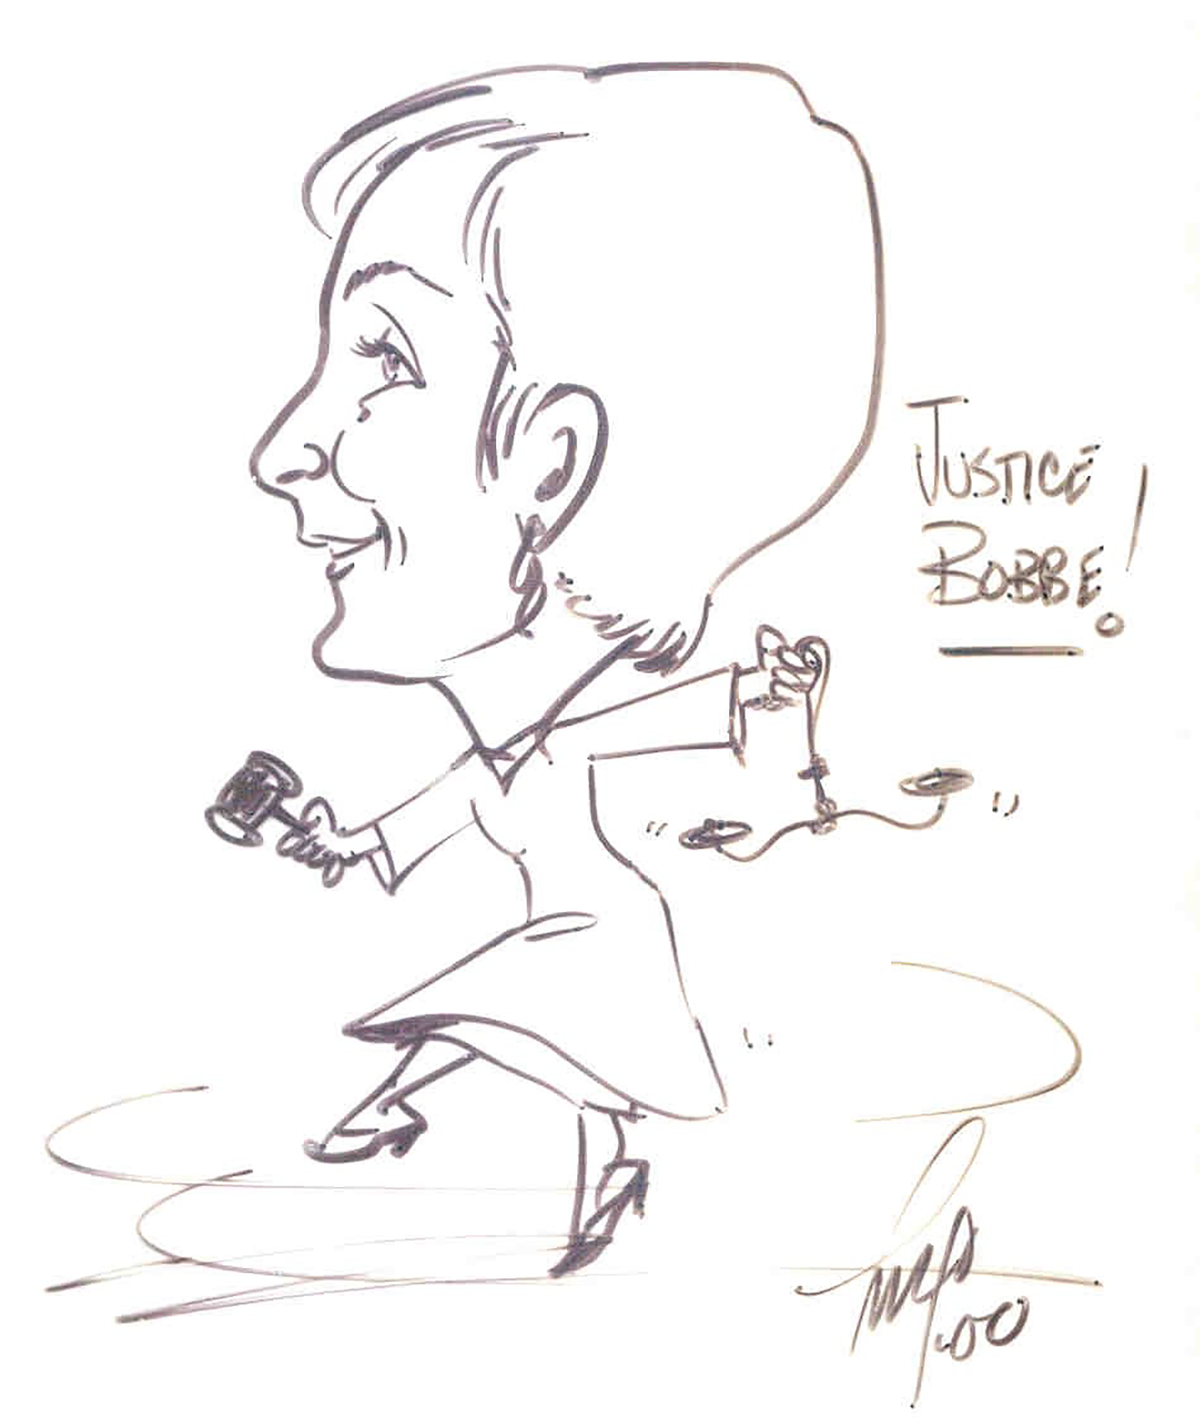 Caricature of Justice Bridge, 2000.